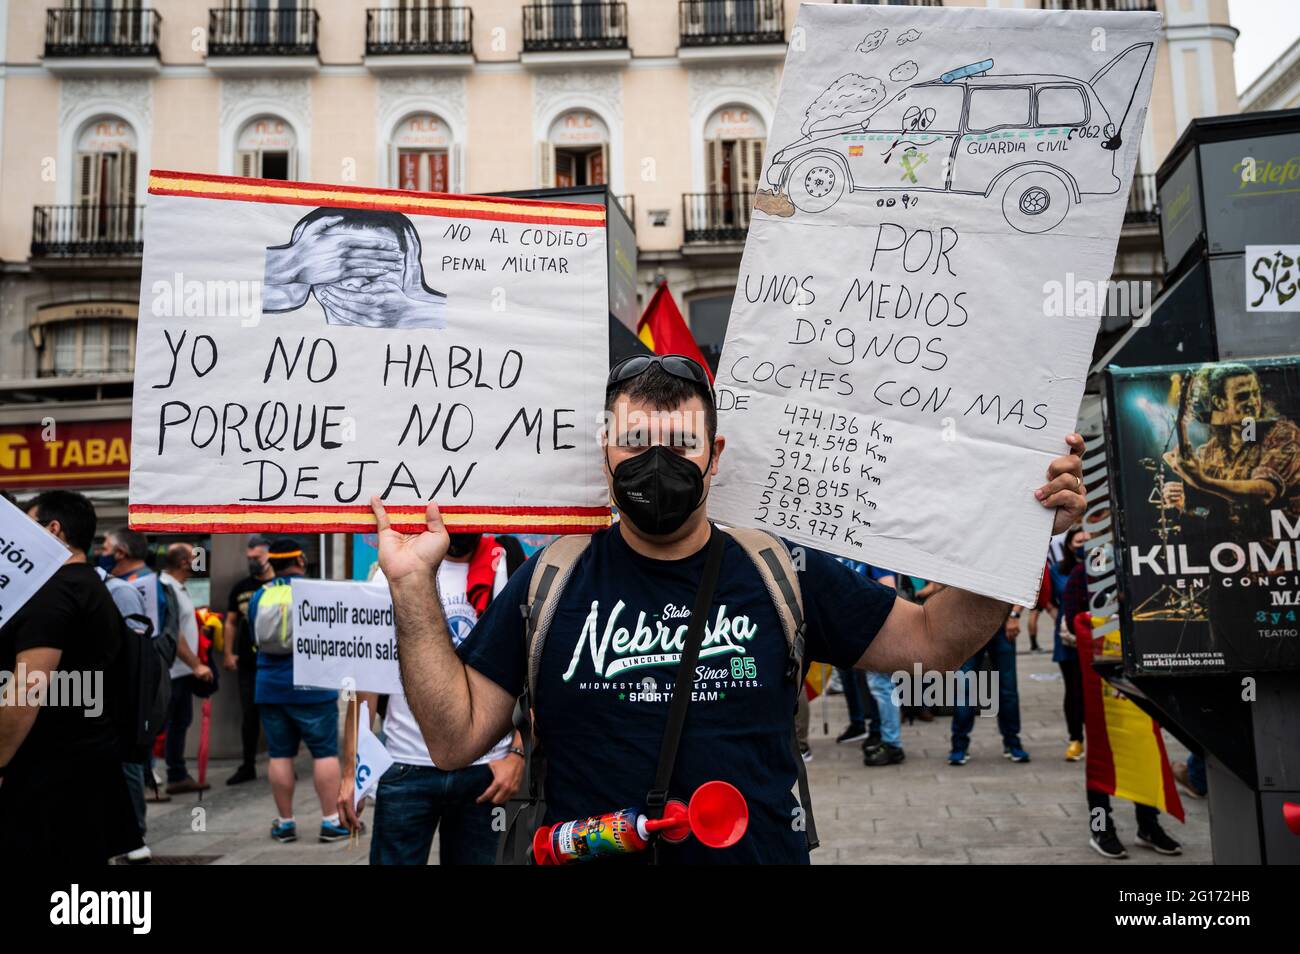 Madrid, Spanien. Juni 2021. Die Zivilgarde protestierten während einer Demonstration mit Plakaten, um die gleichen Rechte mit den übrigen Polizeikräften zu fordern. Quelle: Marcos del Mazo/Alamy Live News Stockfoto